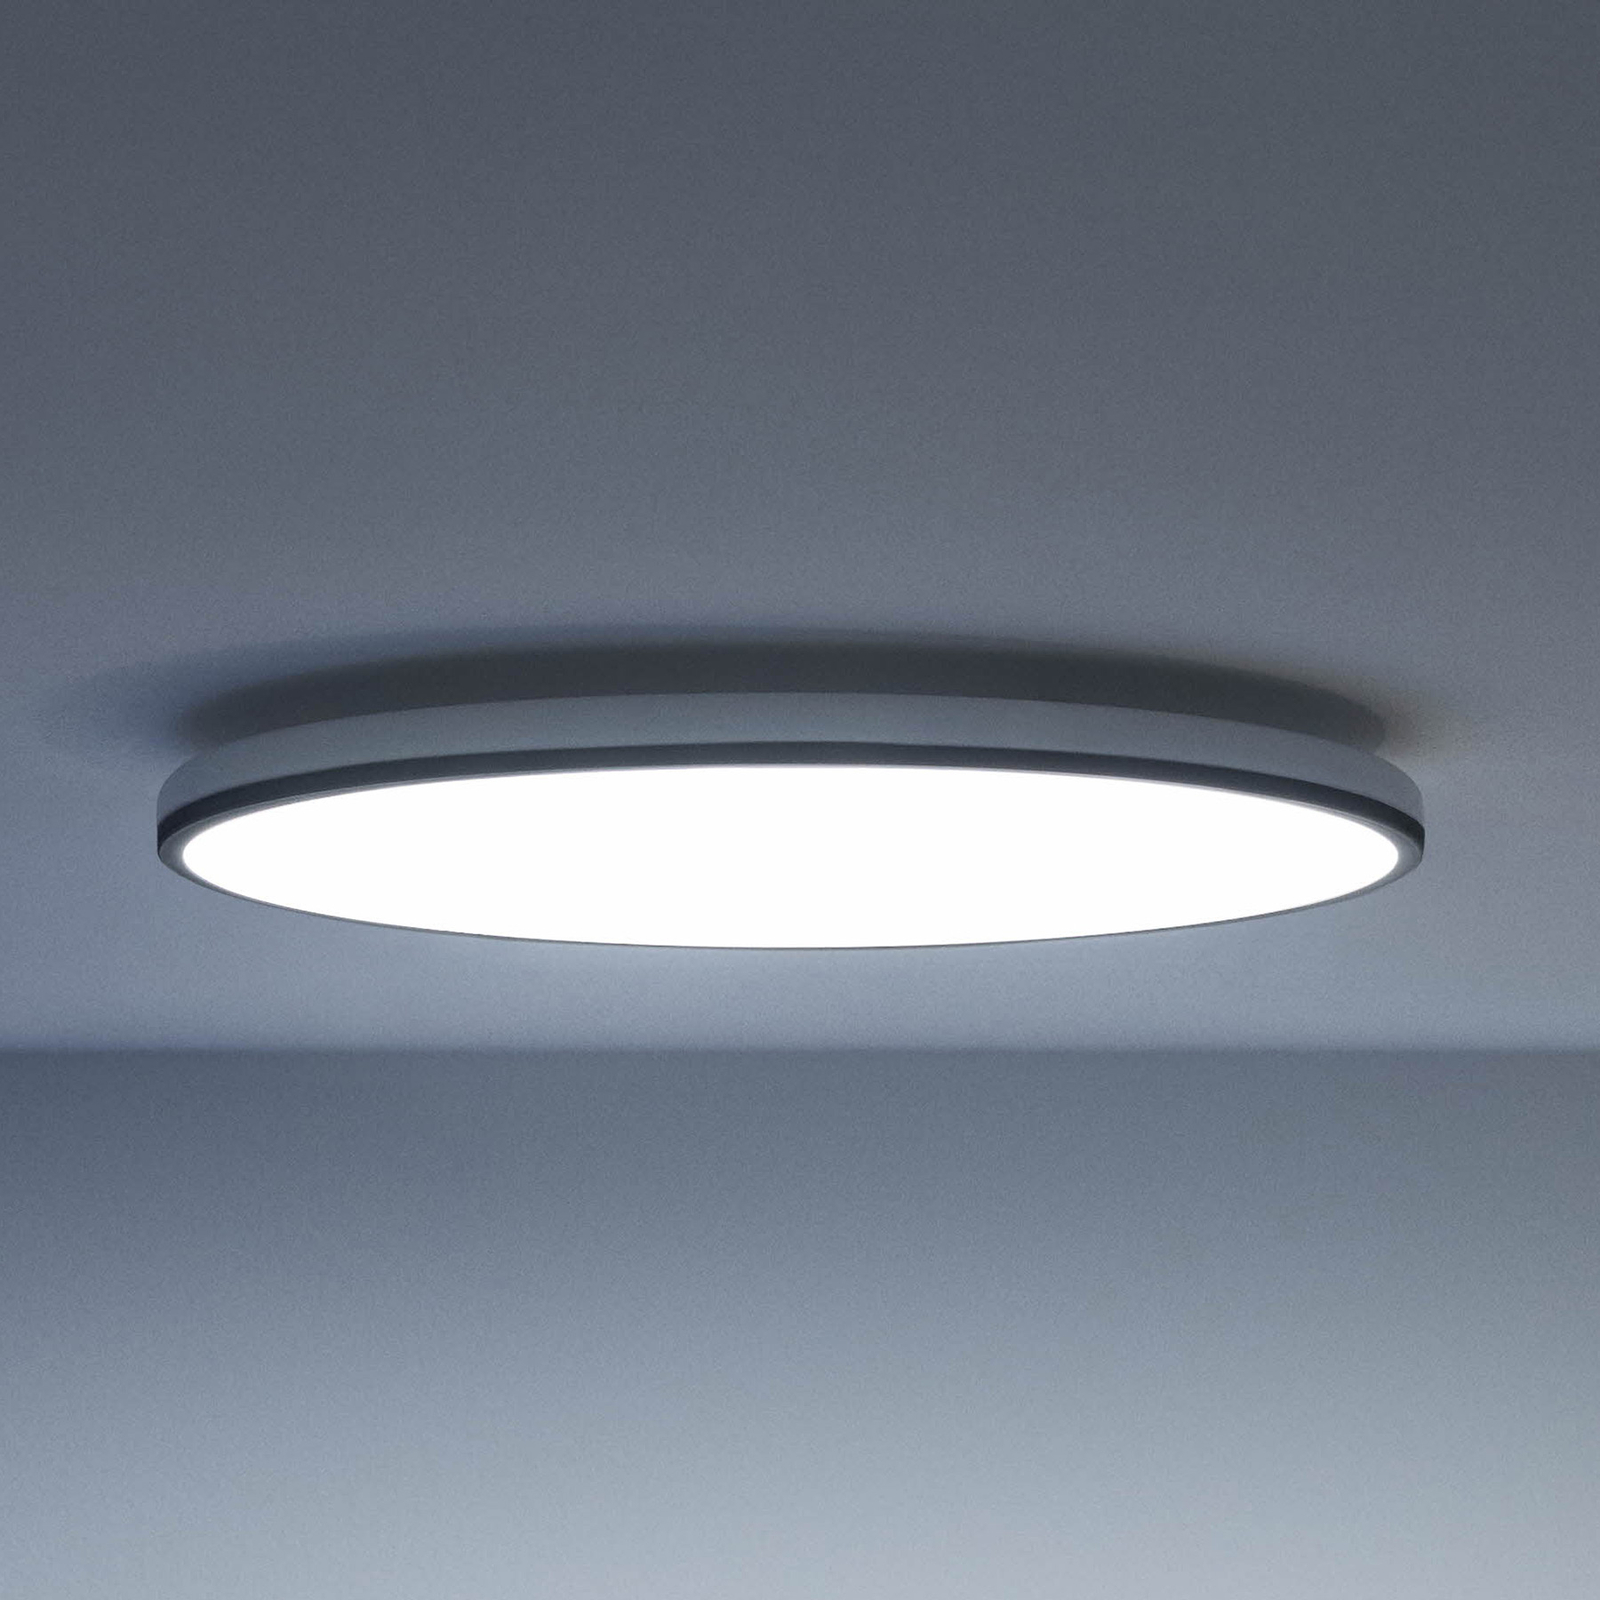 WiZ LED ceiling light Rune, black